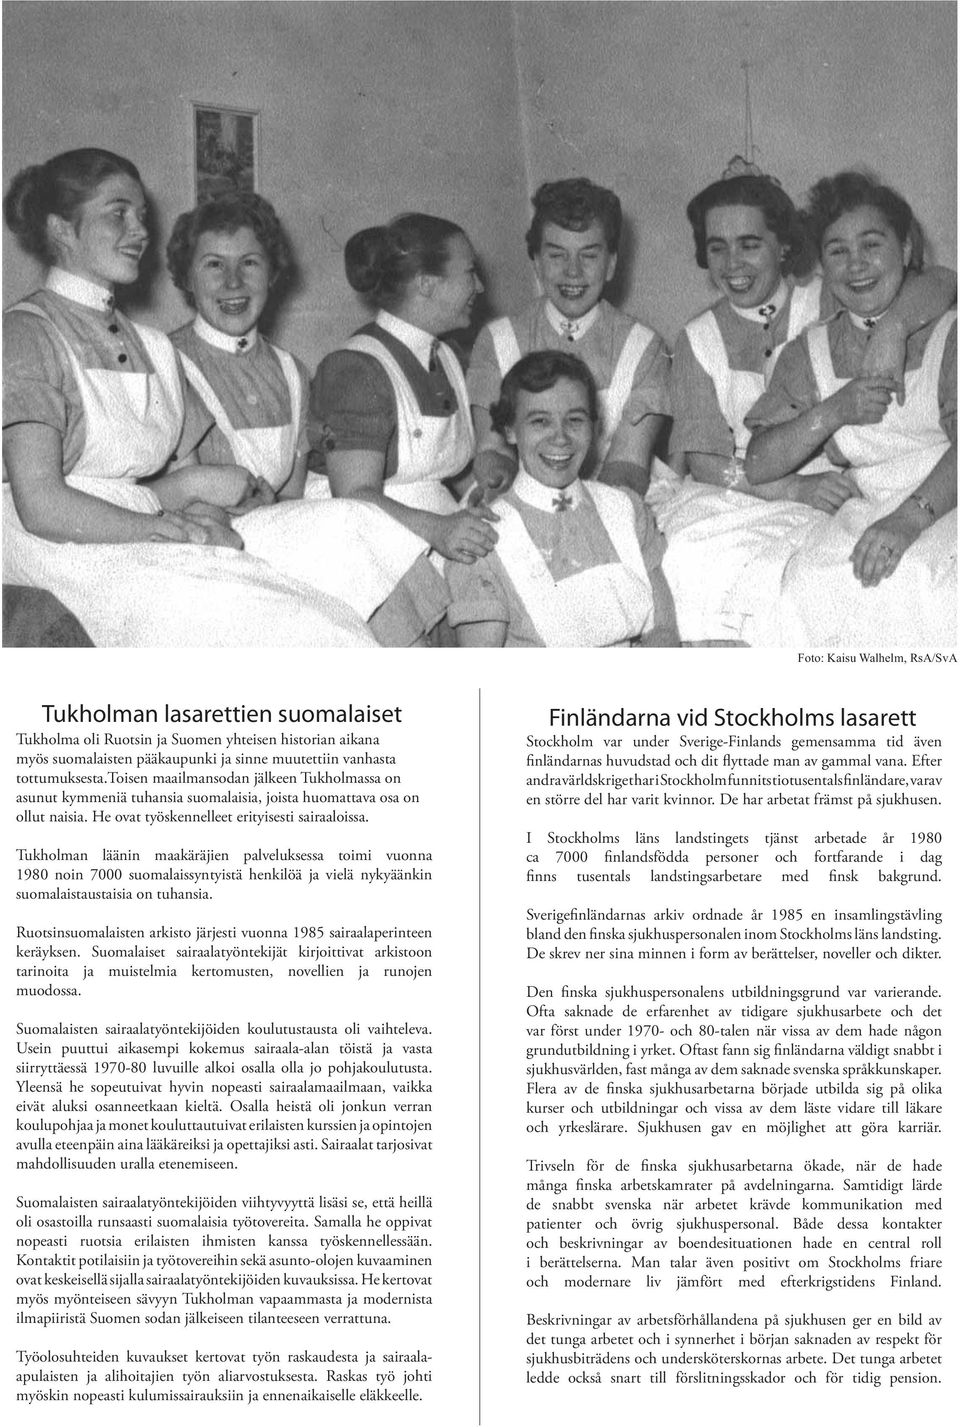 Tukholman läänin maakäräjien palveluksessa toimi vuonna 1980 noin 7000 suomalaissyntyistä henkilöä ja vielä nykyäänkin suomalaistaustaisia on tuhansia.